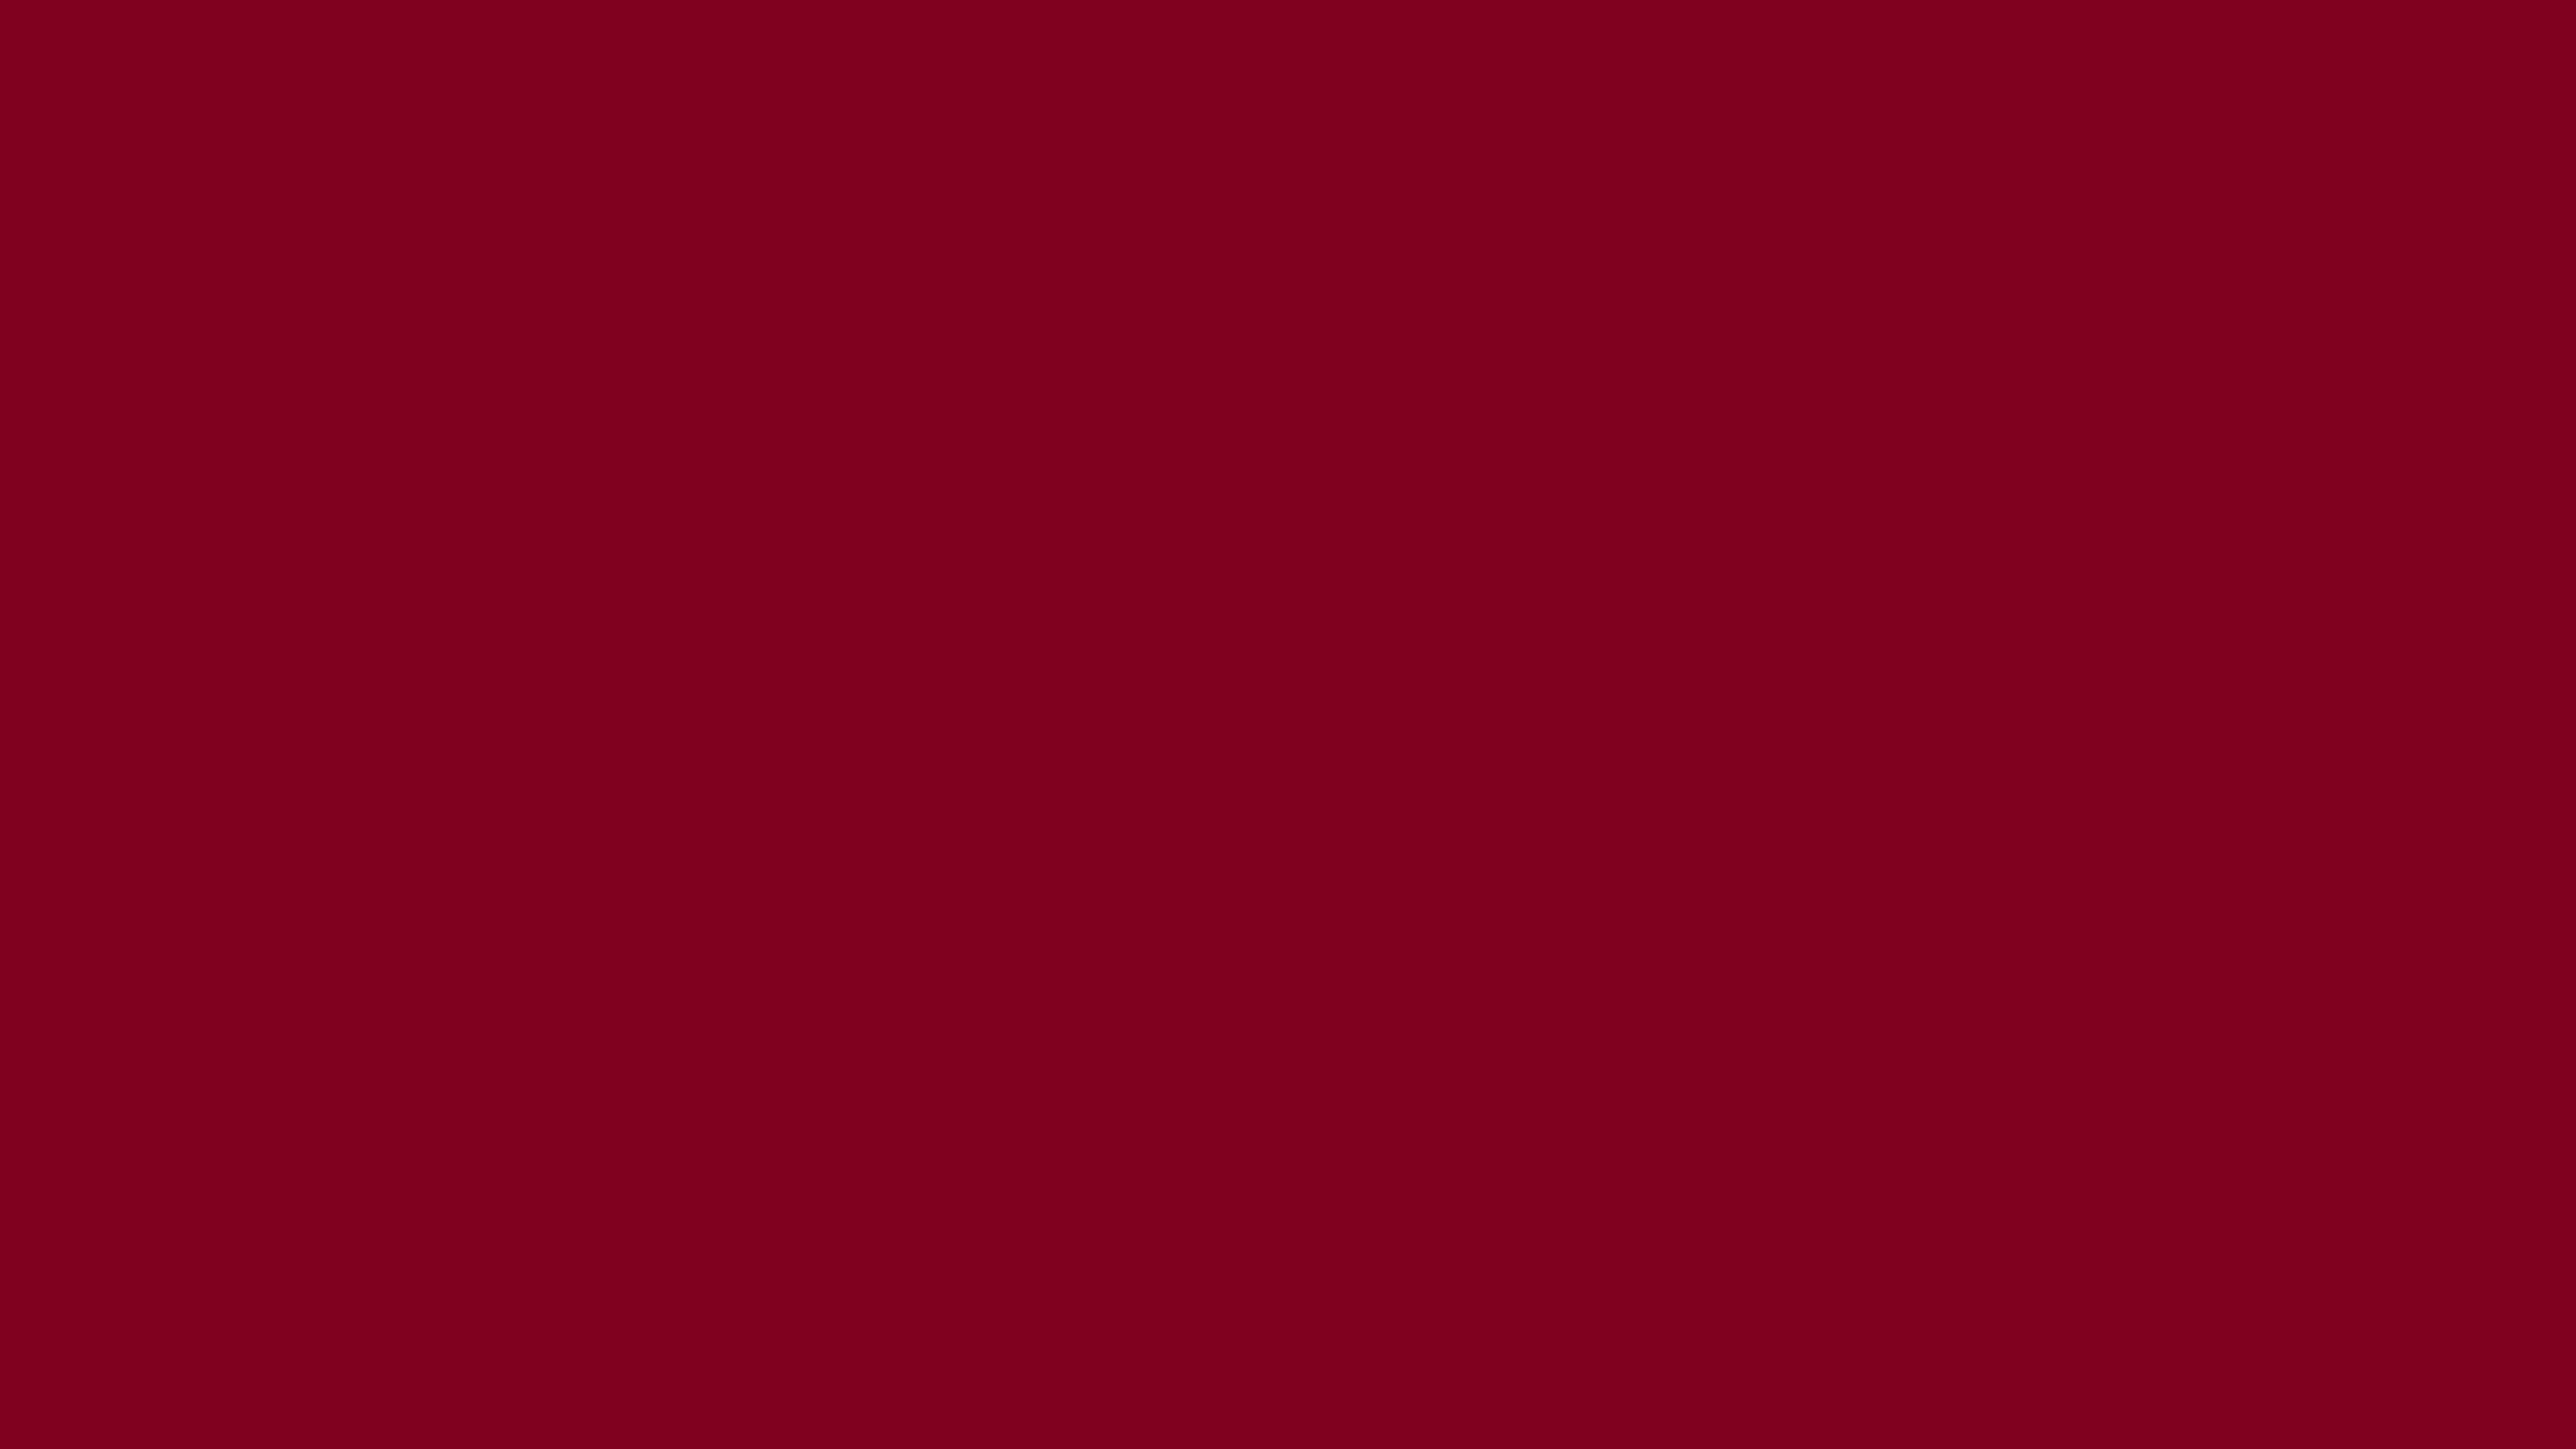 3840-2160-burgundy-solid-color-background